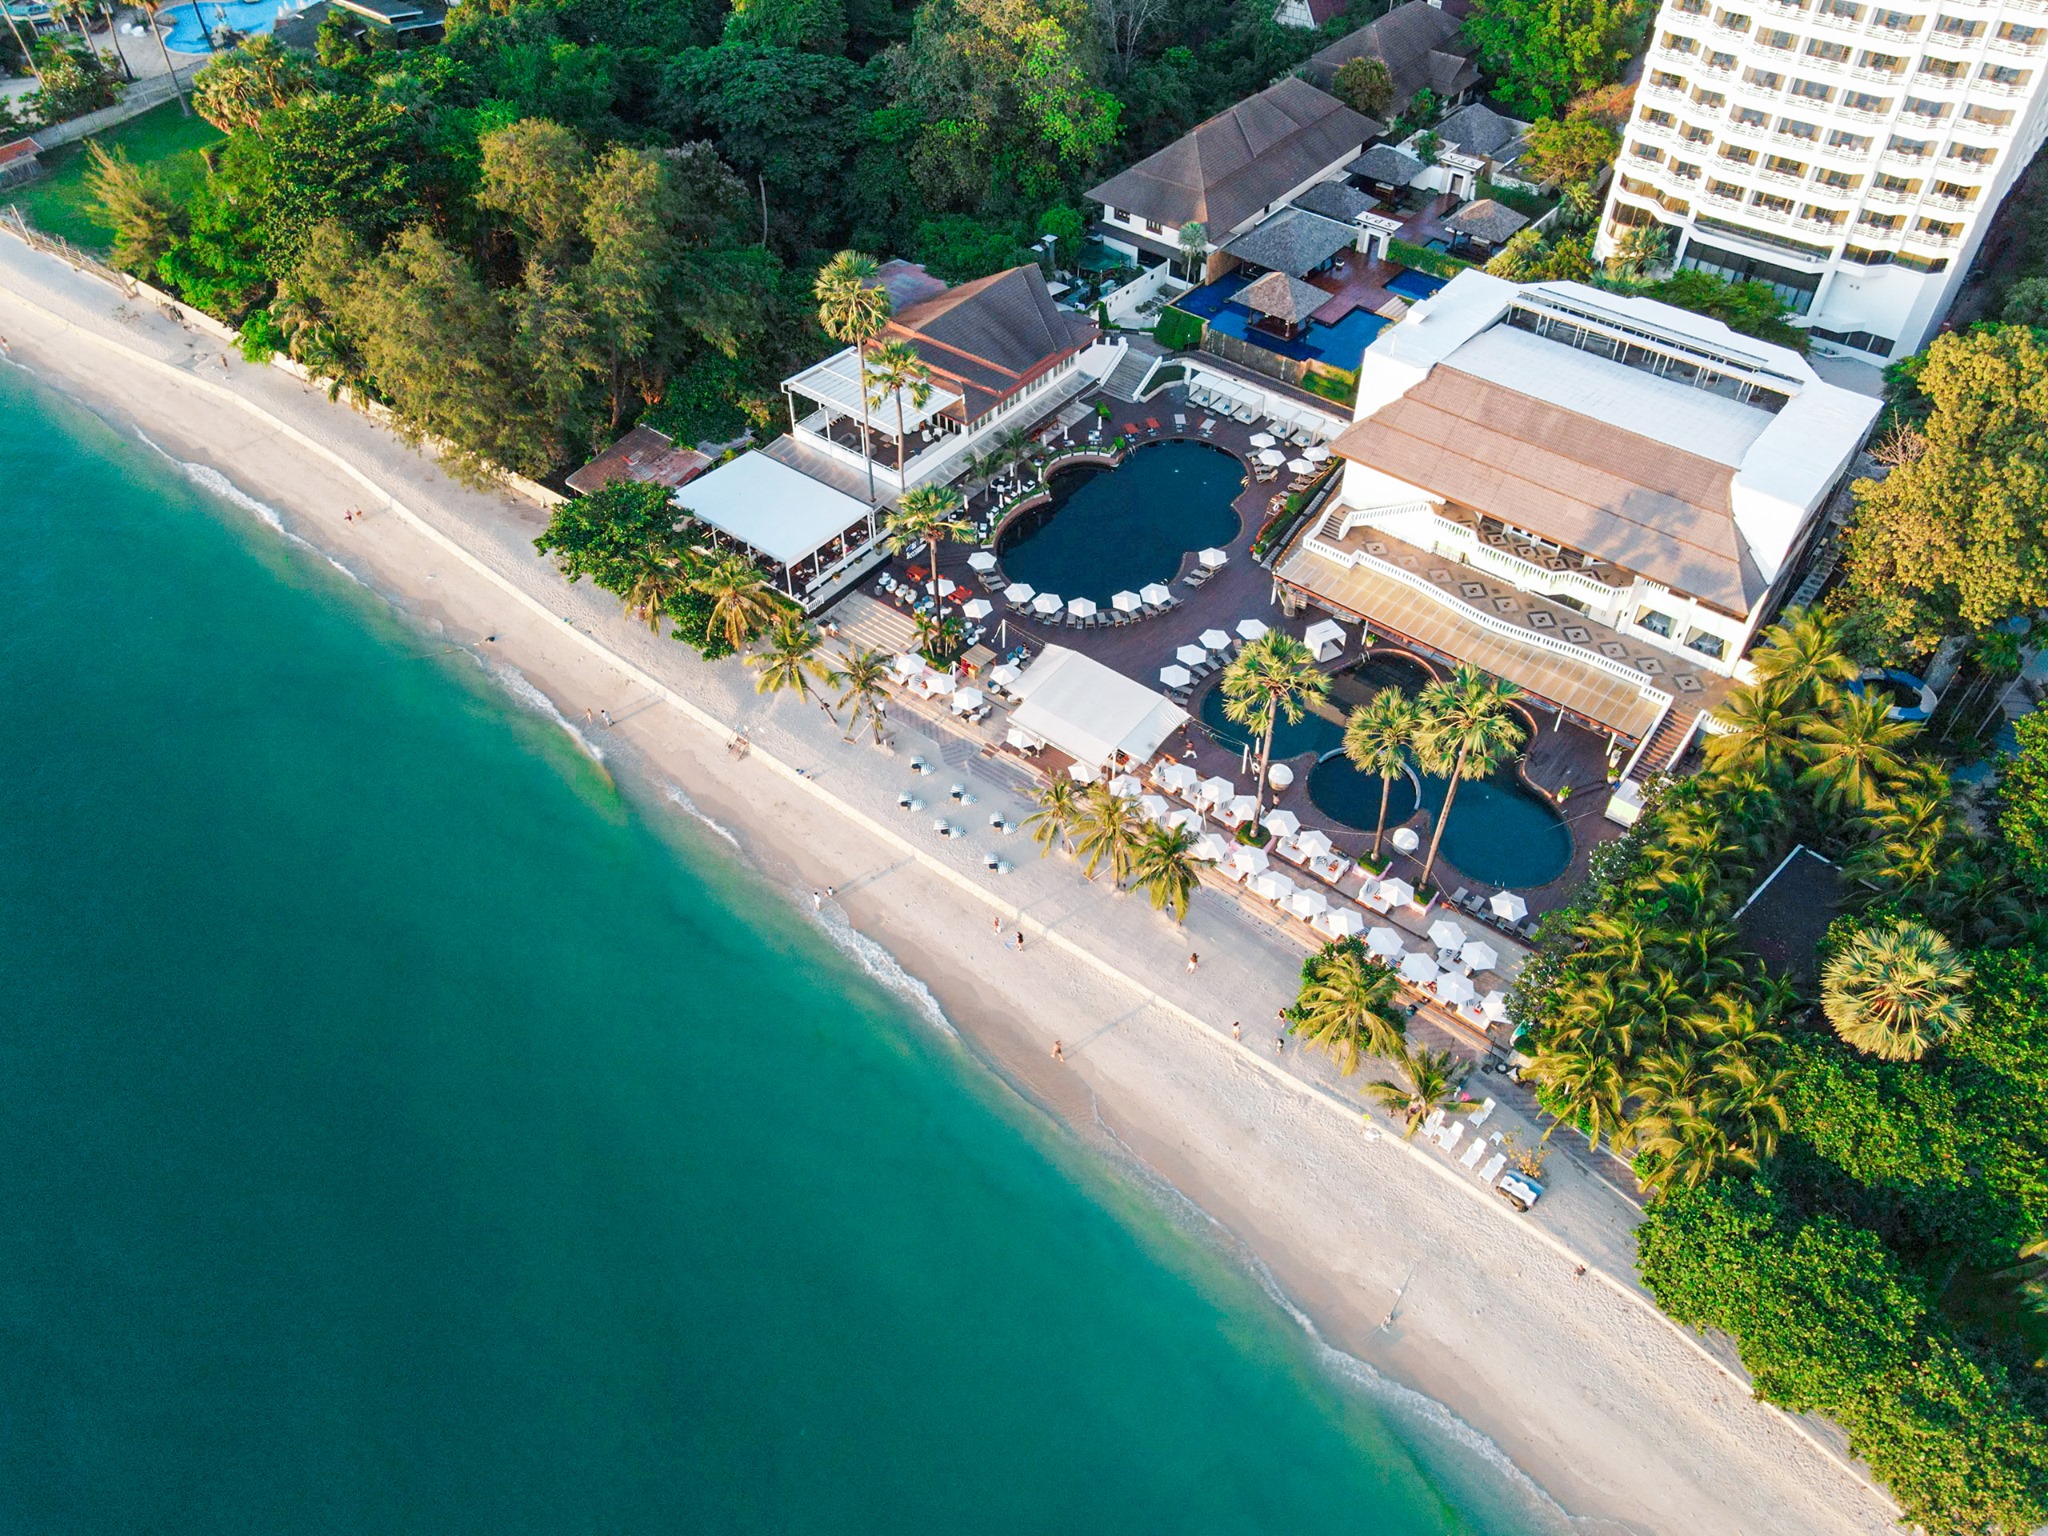 สถานที่จัดงานแต่งริมทะเล ชลบุรี โรงแรมพูลแมน พัทยา จี (Pullman Pattaya Hotel G )